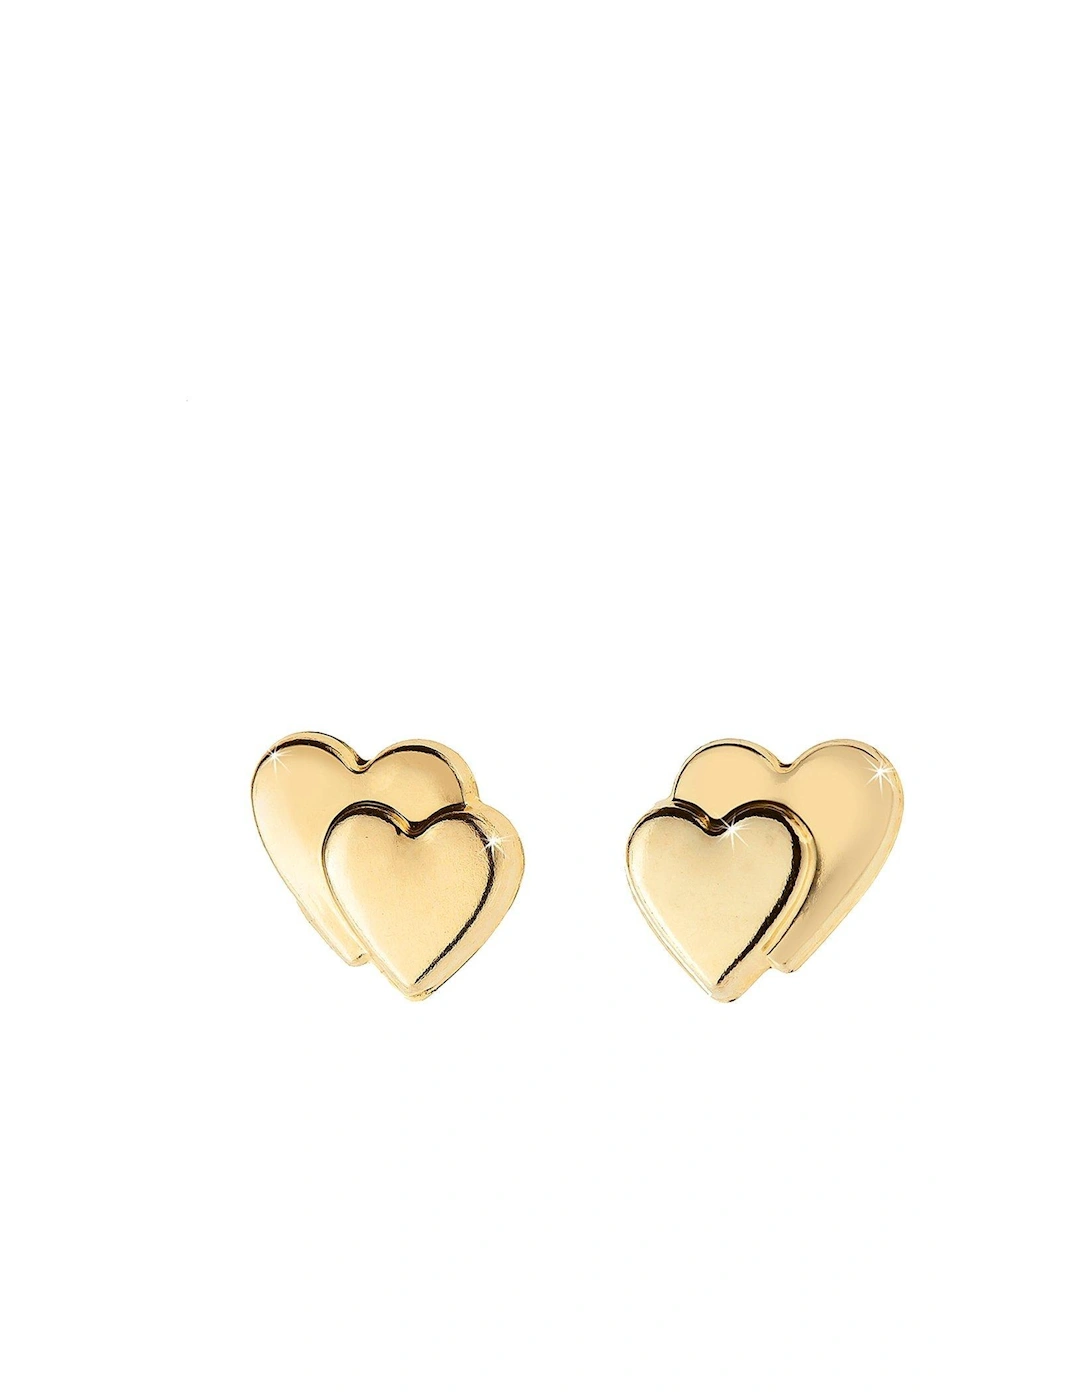 9 Carat Gold Heart on Heart Earrings in Red Heart Box, 2 of 1